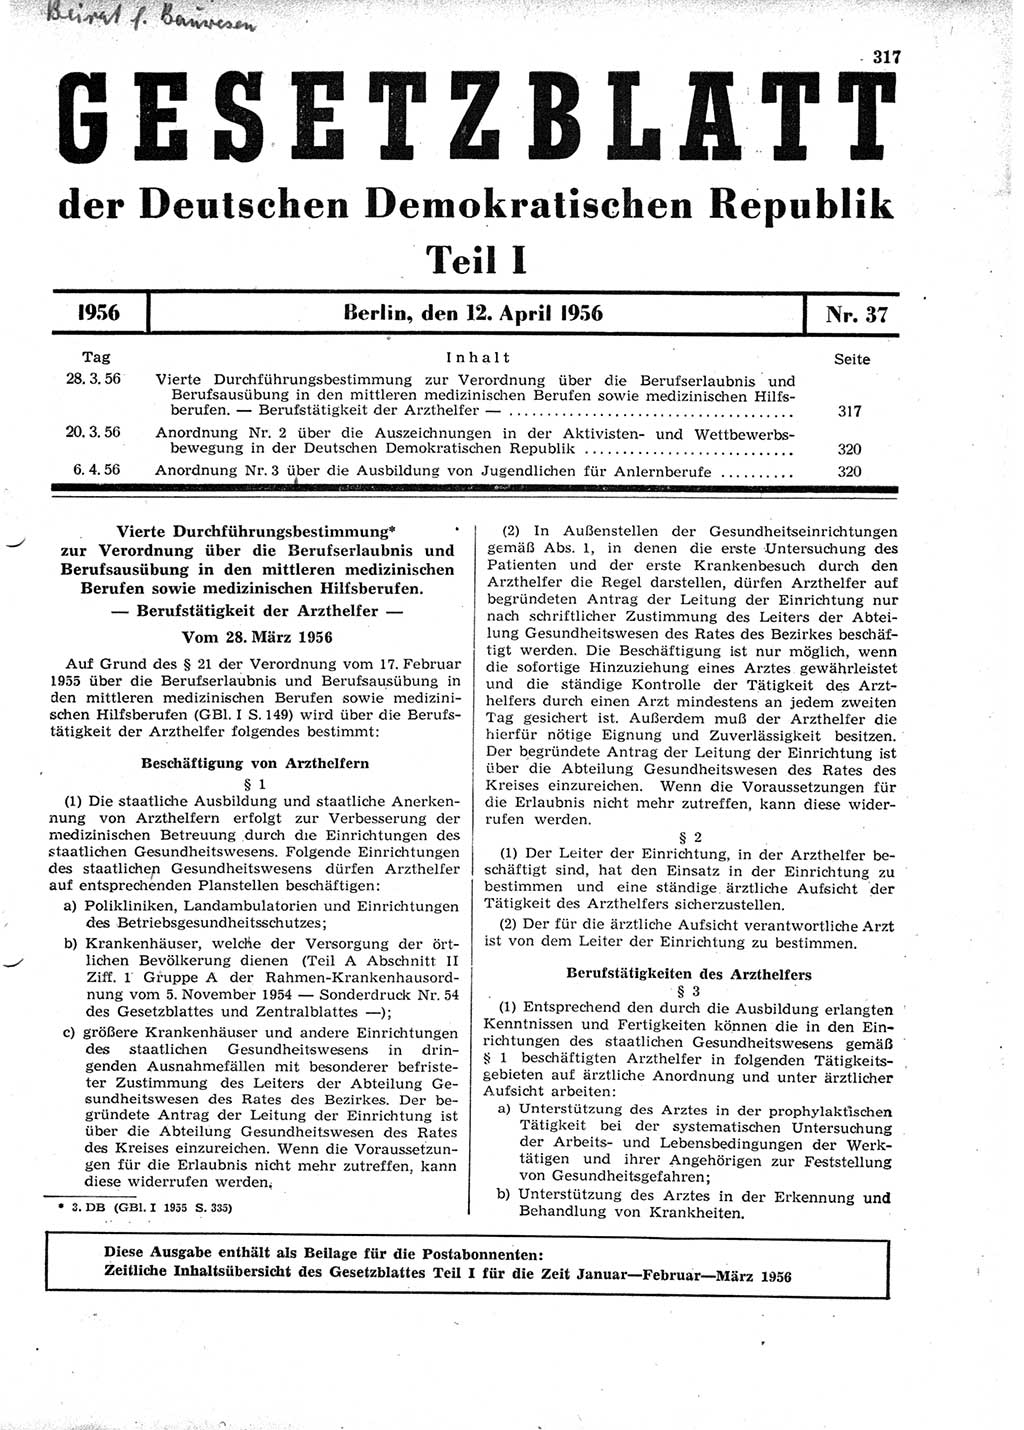 Gesetzblatt (GBl.) der Deutschen Demokratischen Republik (DDR) Teil Ⅰ 1956, Seite 317 (GBl. DDR Ⅰ 1956, S. 317)